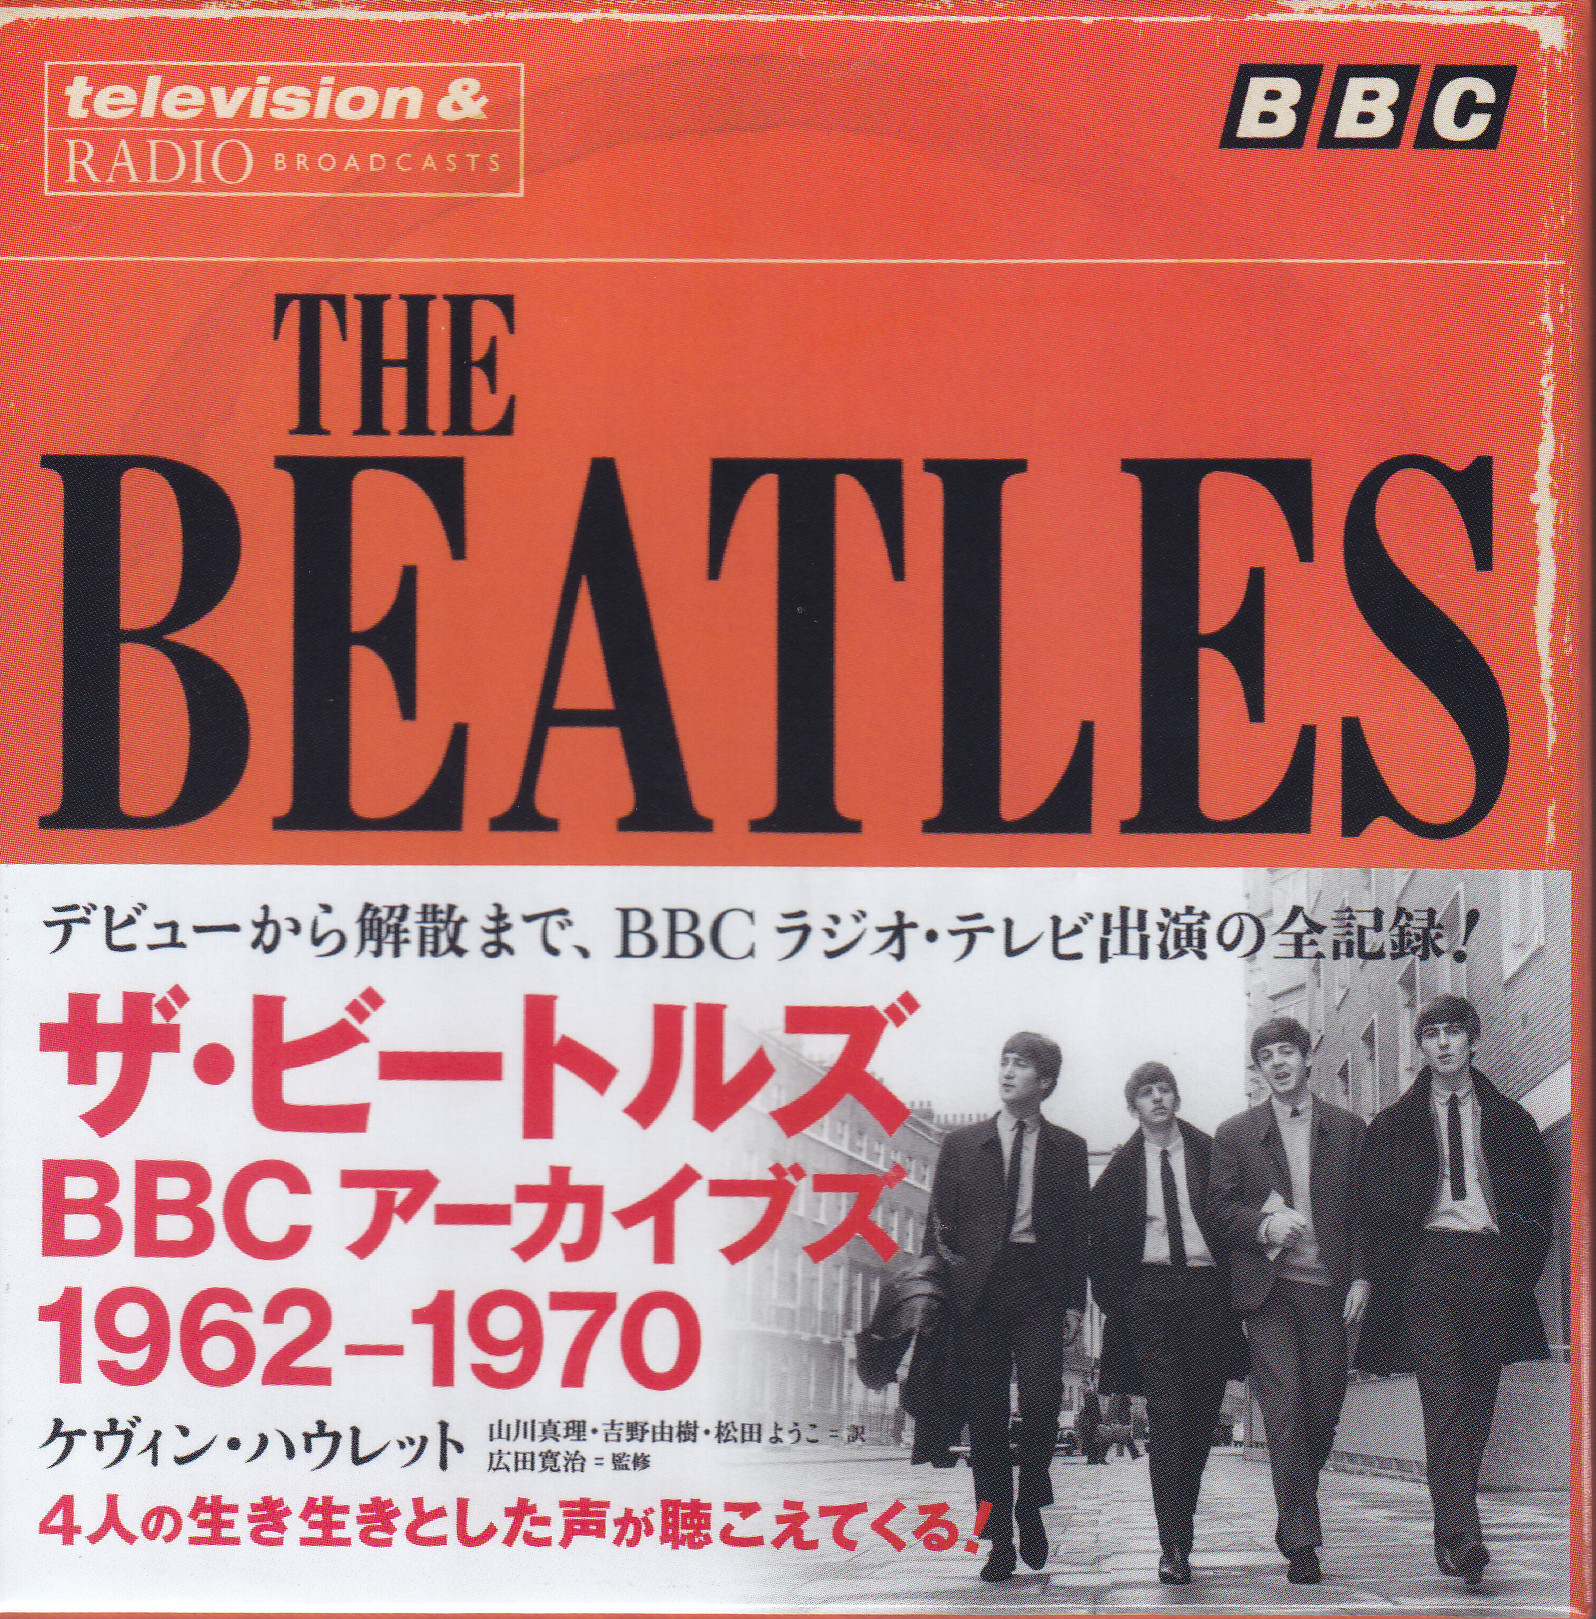 Beatles / BBC 1962-1970 / 11 CD+1Bonus DVD Box Set – GiGinJapan